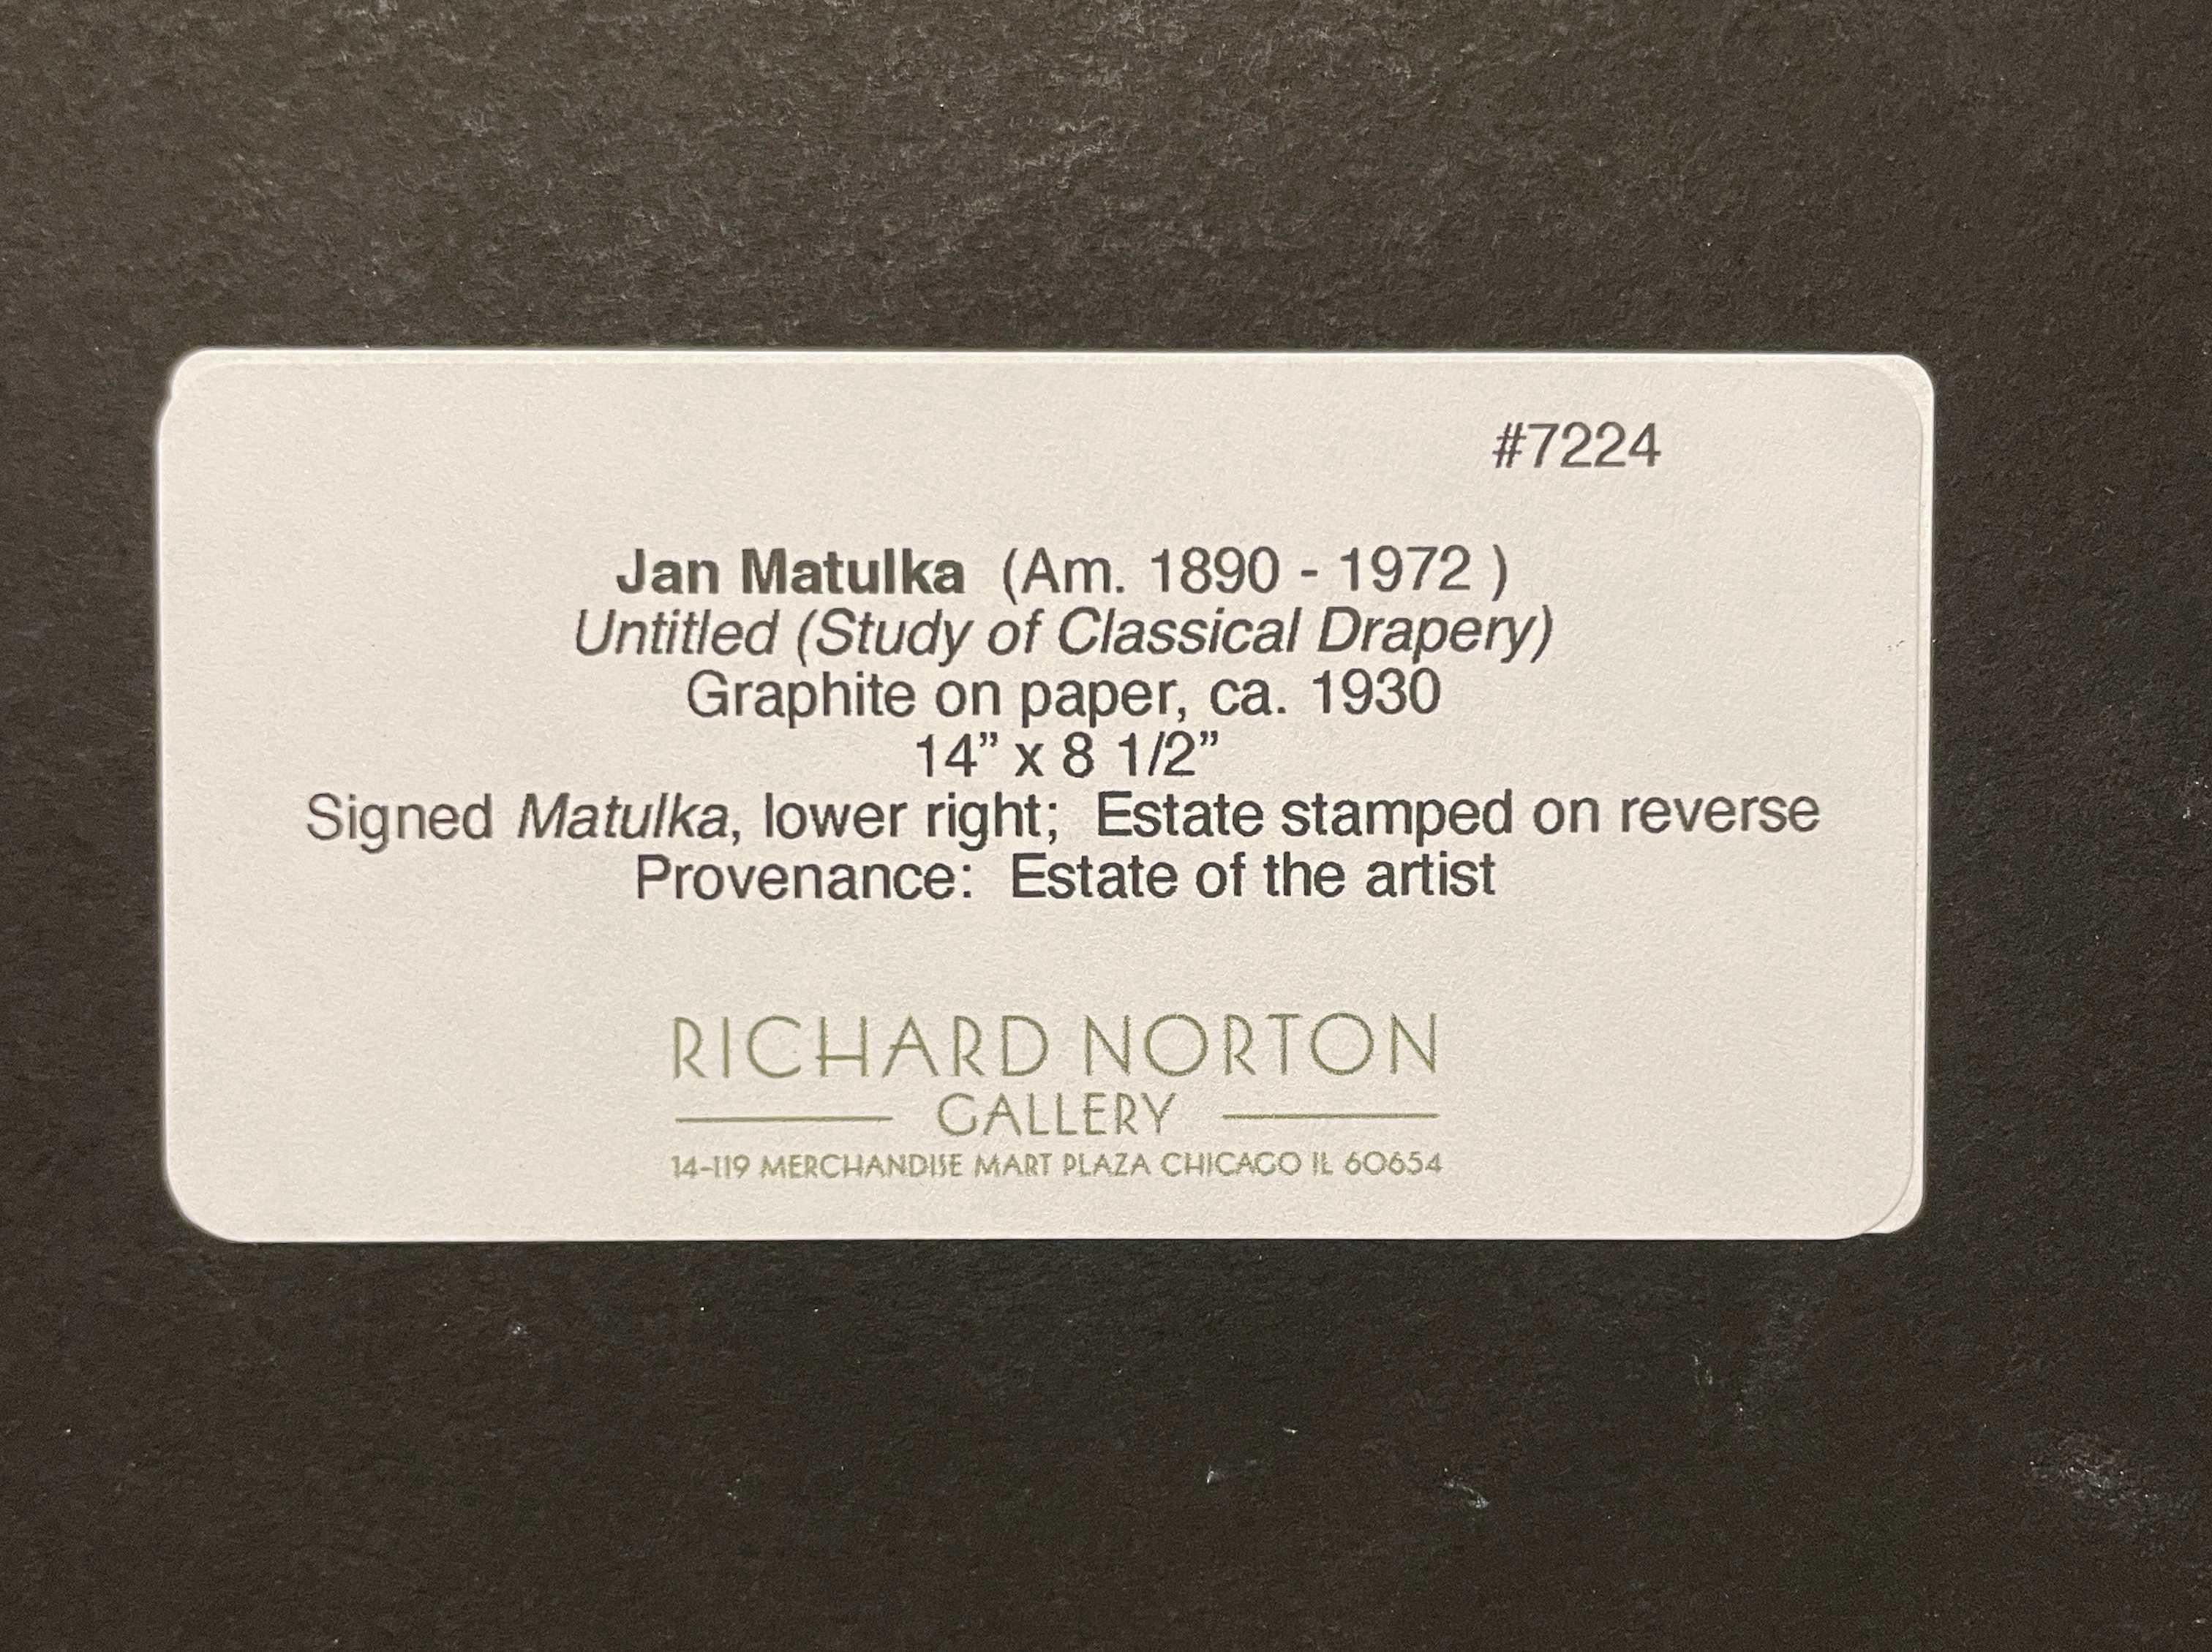 Eine Graphitzeichnung auf Papier, Studie einer klassischen Draperie des Künstlers Jan Matulka.  Die Abbildung ist auf der Rückseite eines maschinengeschriebenen, gefalteten Briefbogens von Dyer, Hudson & Co. aus New York, NY, vom 28. Januar 1938. 